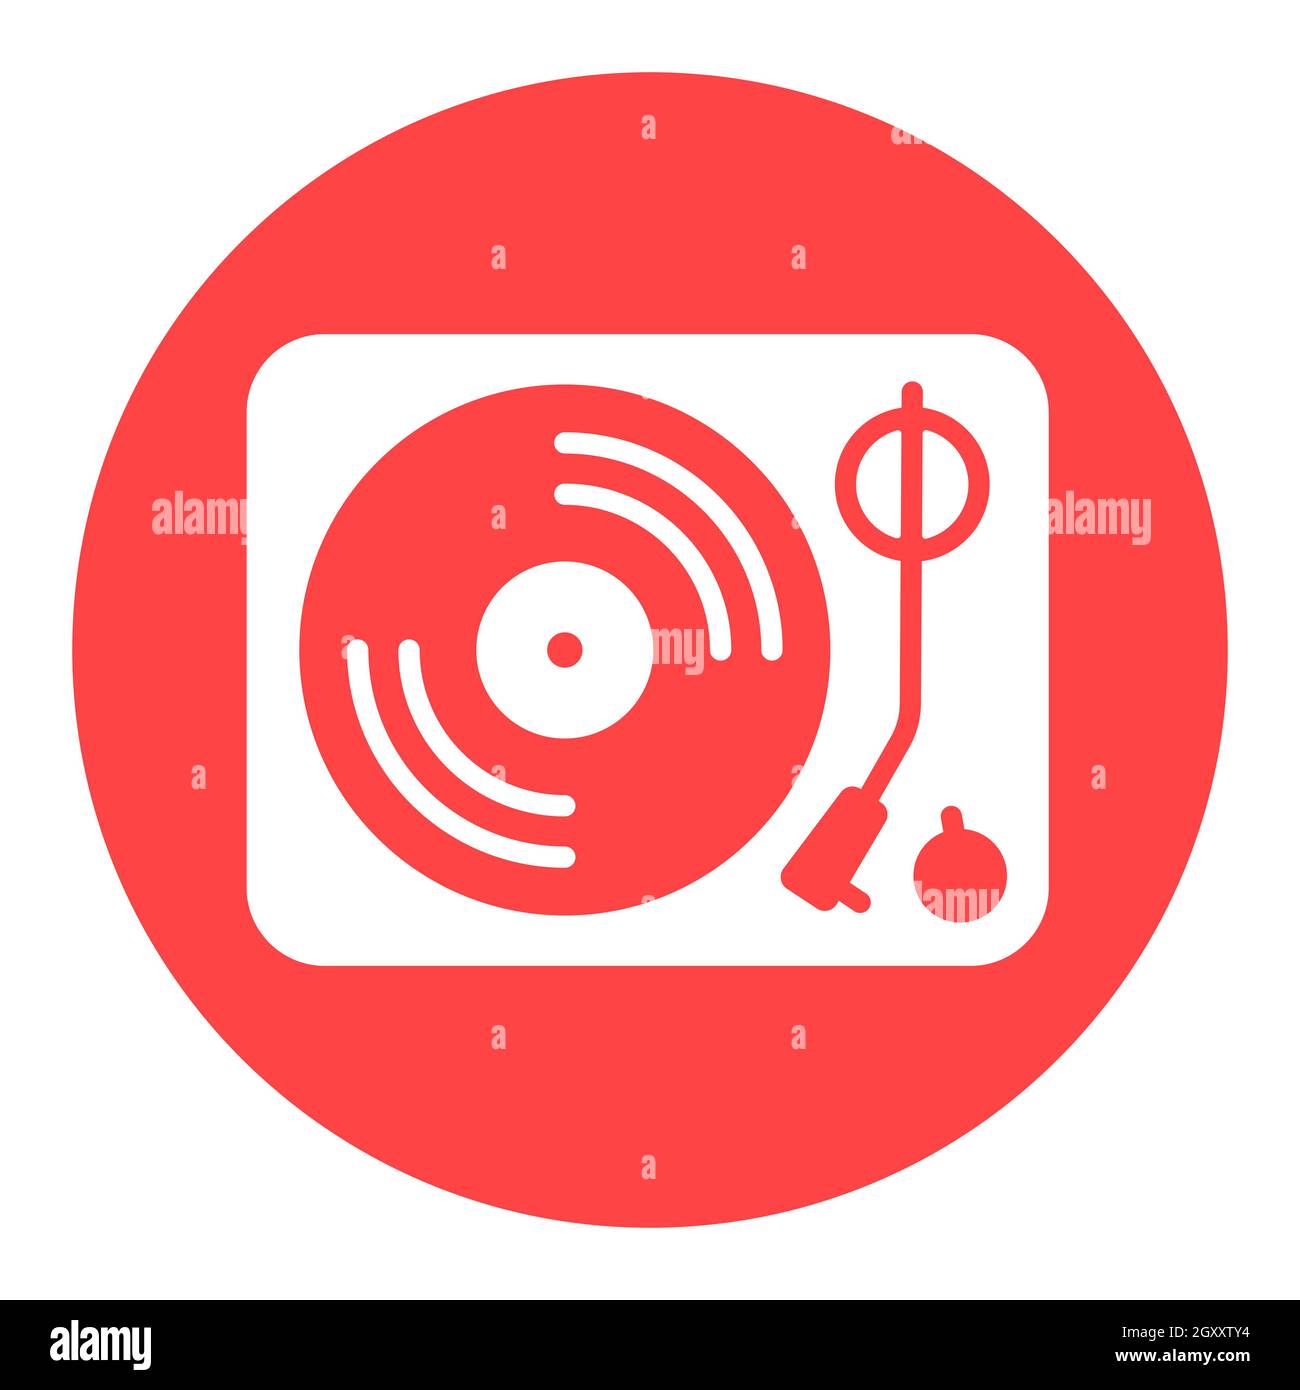 Icona glifo bianco piatto vettoriale del lettore di dischi in vinile.  Segnale musicale. Simbolo grafico per